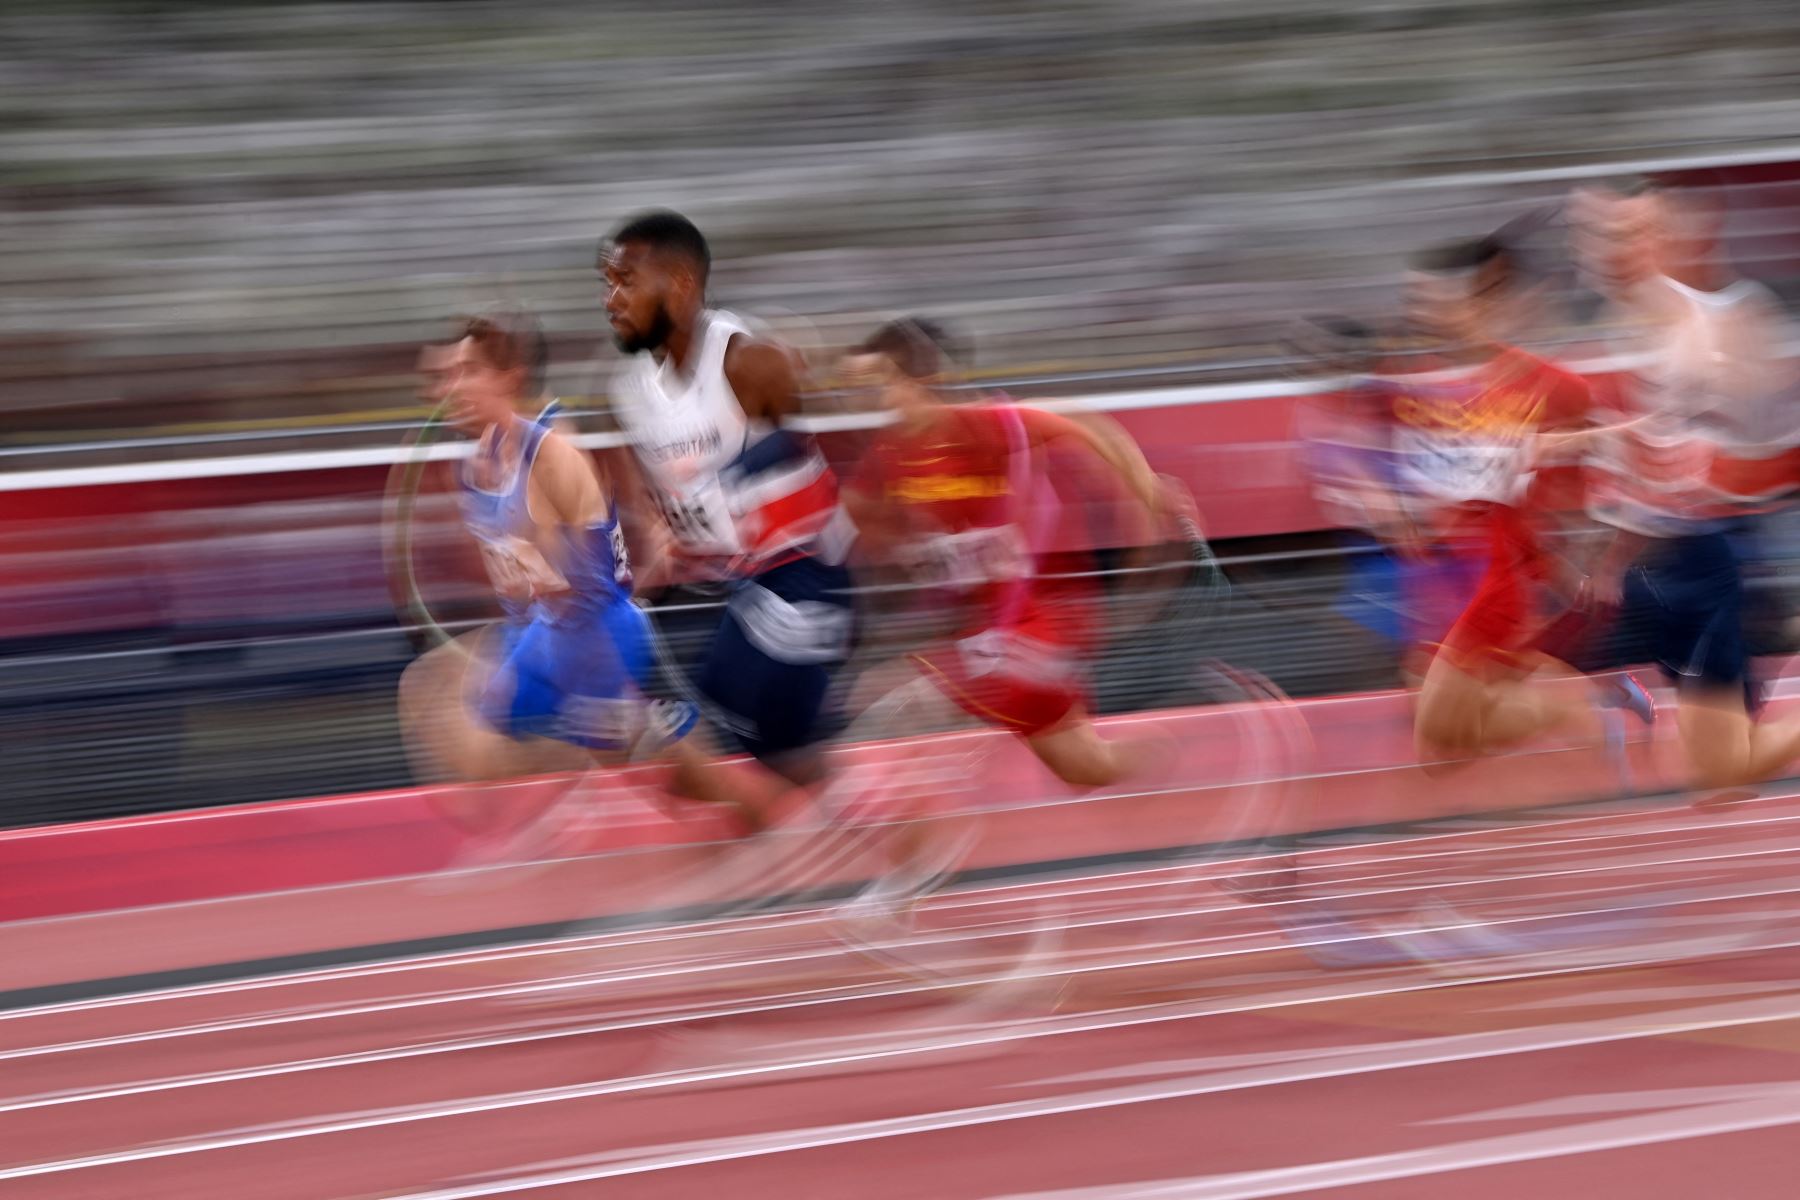 Los atletas compiten en la final masculina de relevos 4x100m durante los Juegos Olímpicos de Tokio 2020 en el Estadio Olímpico de Tokio el 6 de agosto de 2021. Foto: AFP